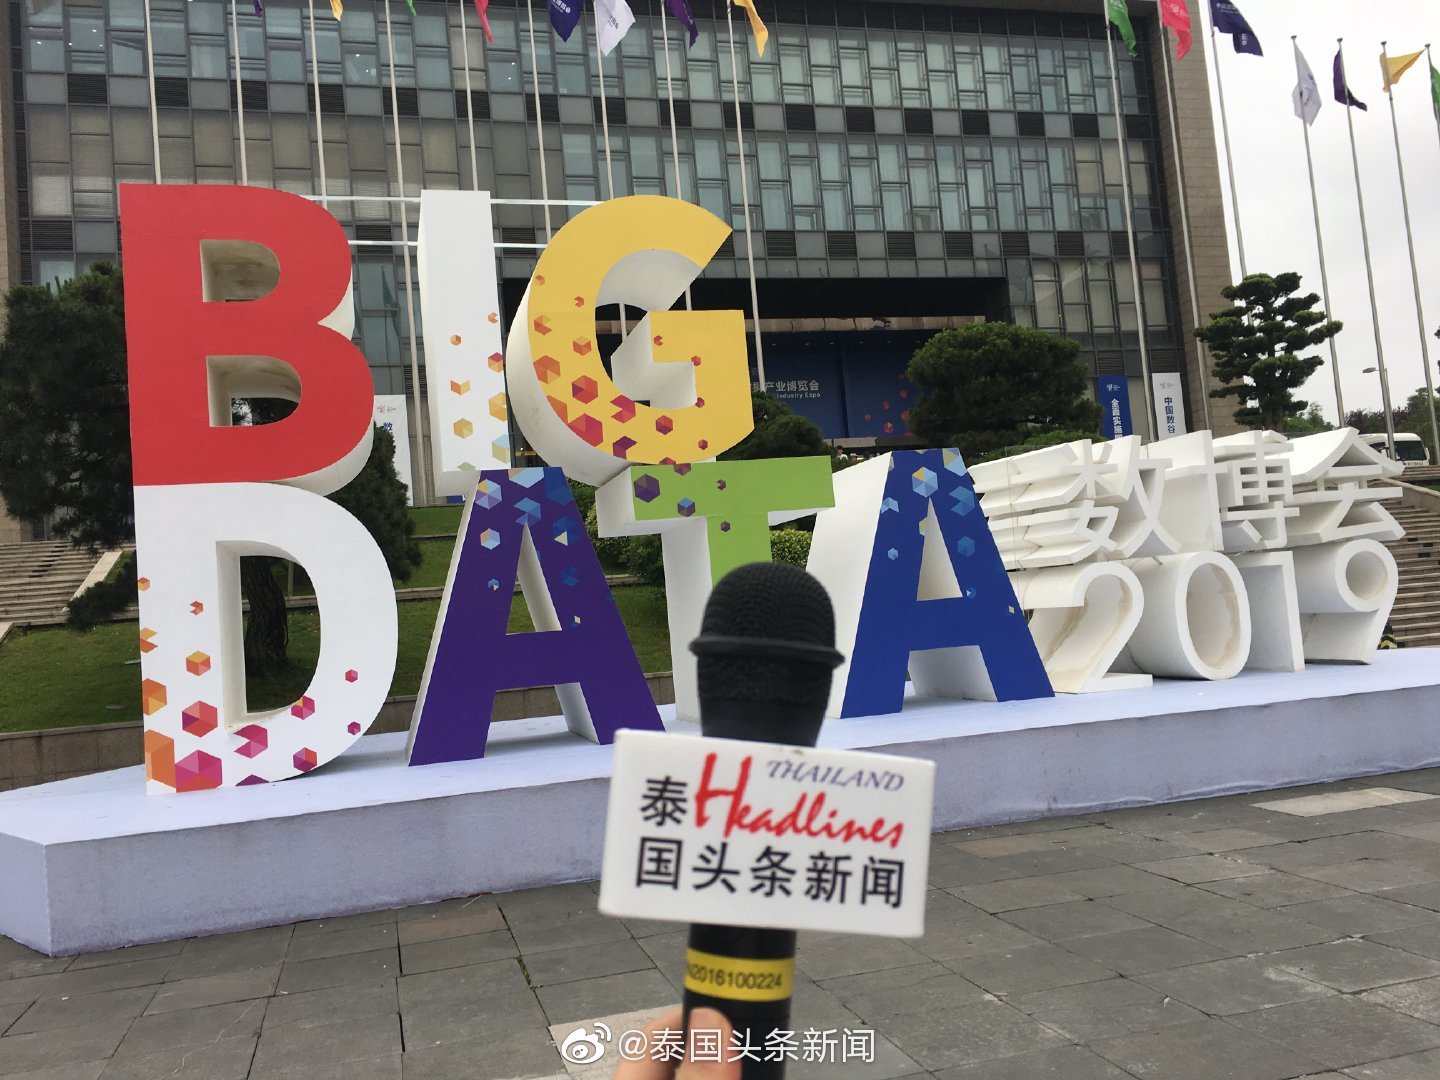 30 พฤษภาคม 2019 นิตยสาร《@ManGu曼谷》และ Thailand Headliness News เข้าร่วม "2019 China International Big Data Industry Expo"